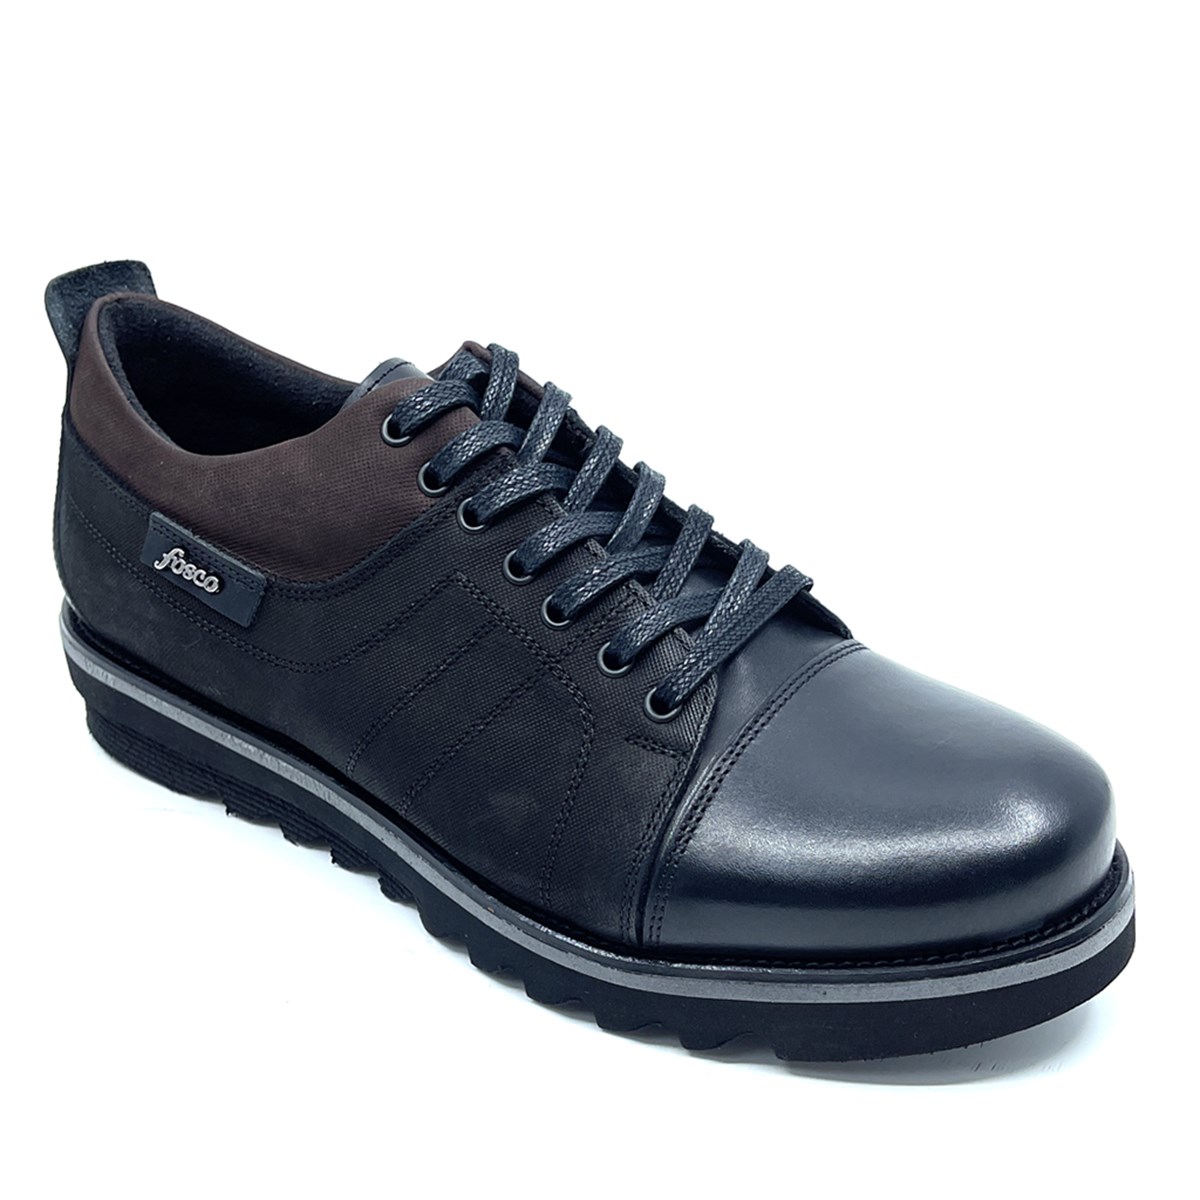 Fosco Erkek Nubuk - Hakiki Deri Spor Günlük Rahat Ayakkabı, Renk: Siyah, Beden: 39